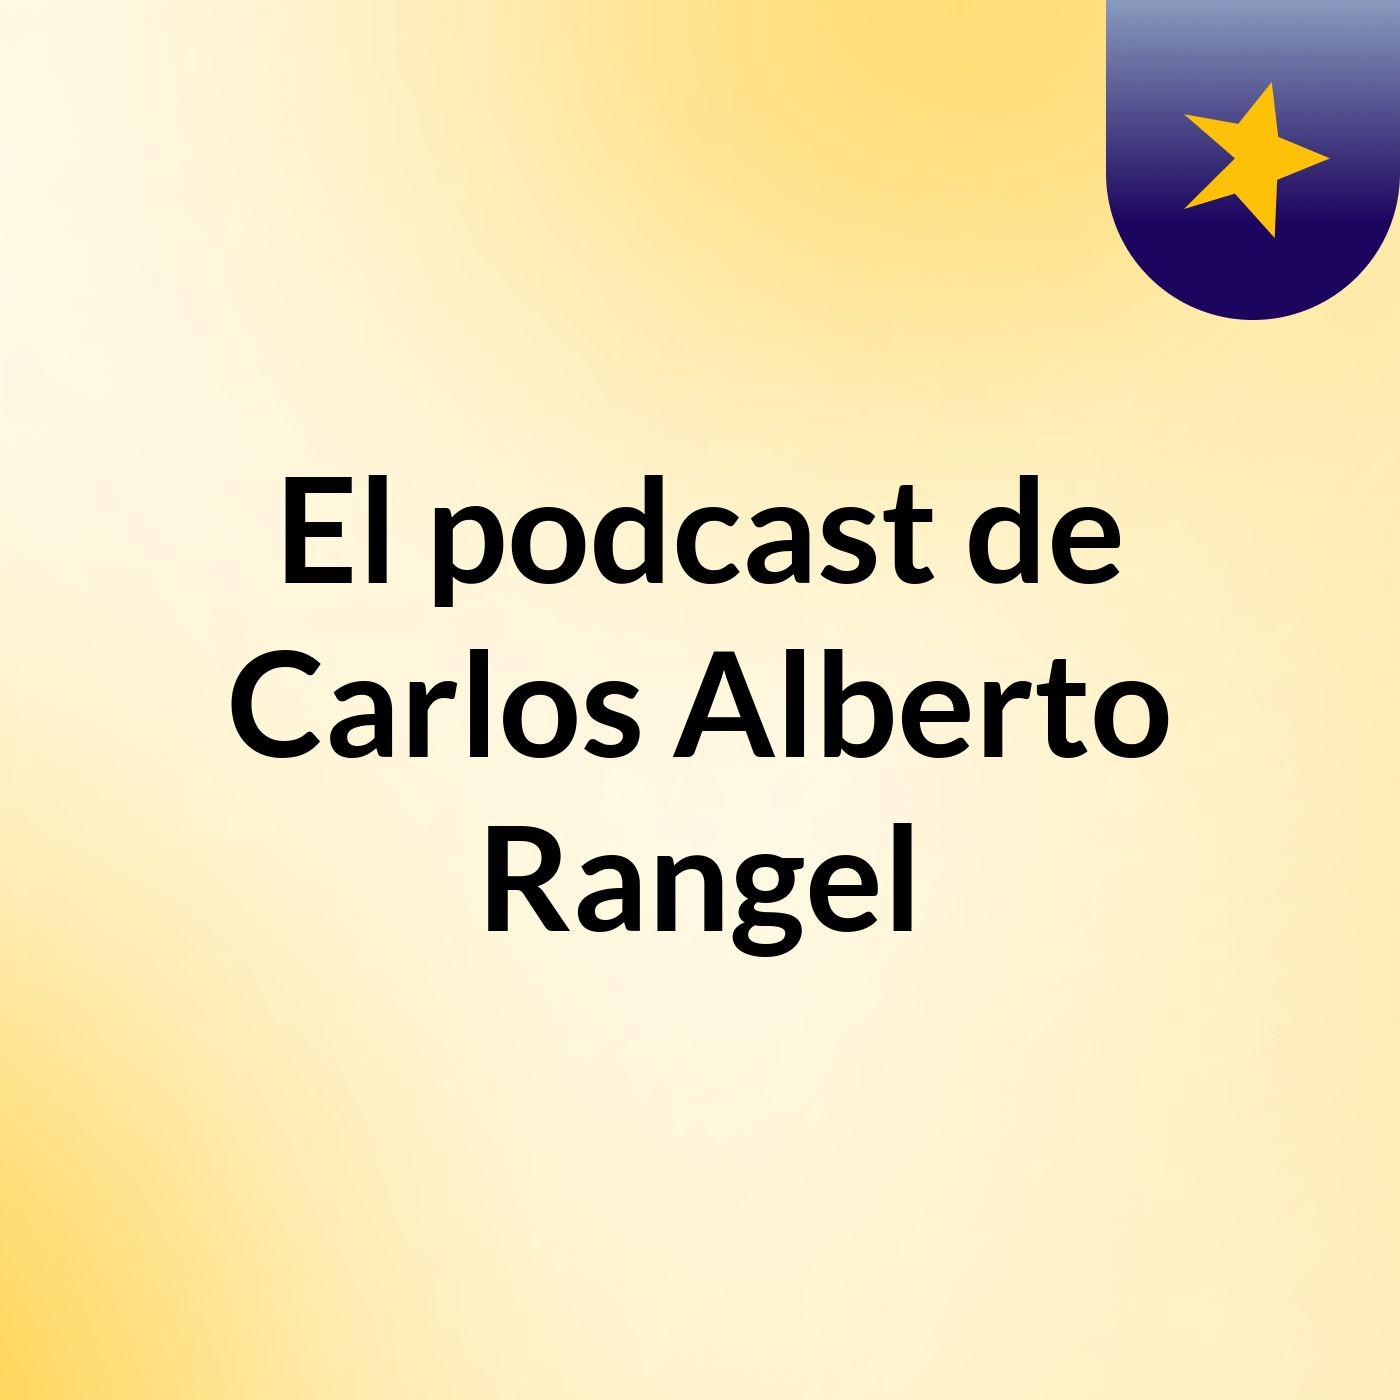 Episodio 3 - El podcast de Carlos Alberto Rangel